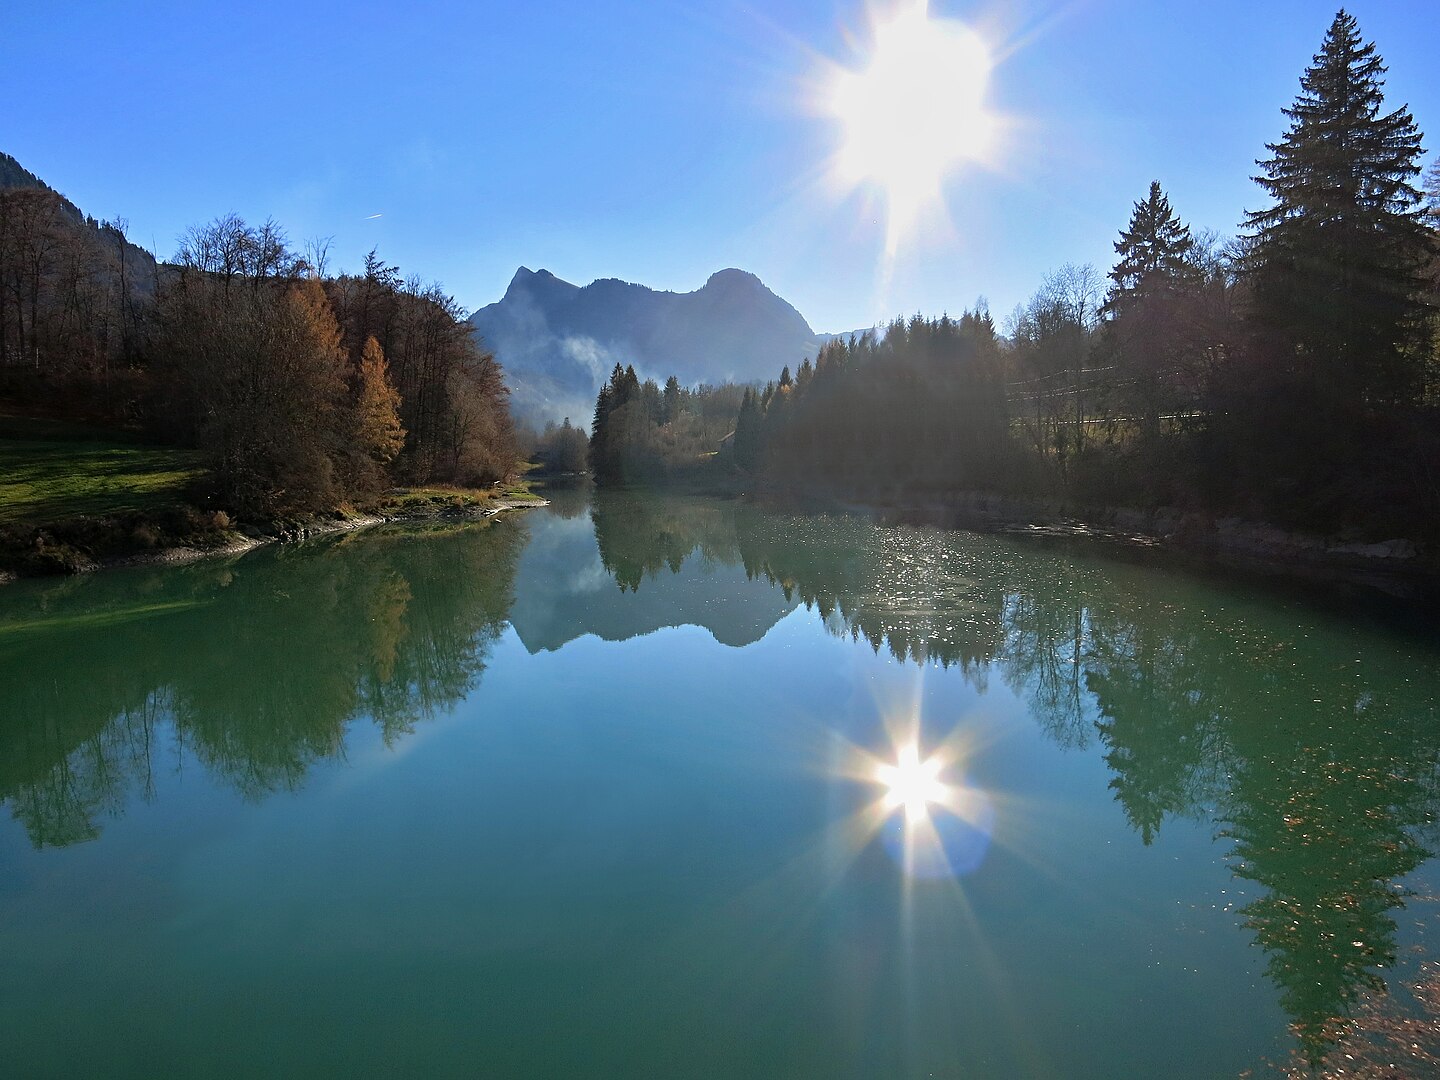 Le lac de Montbovon, canton de Fribourg, Suisse. Par Tschubby — CC BY-SA 3.0, 